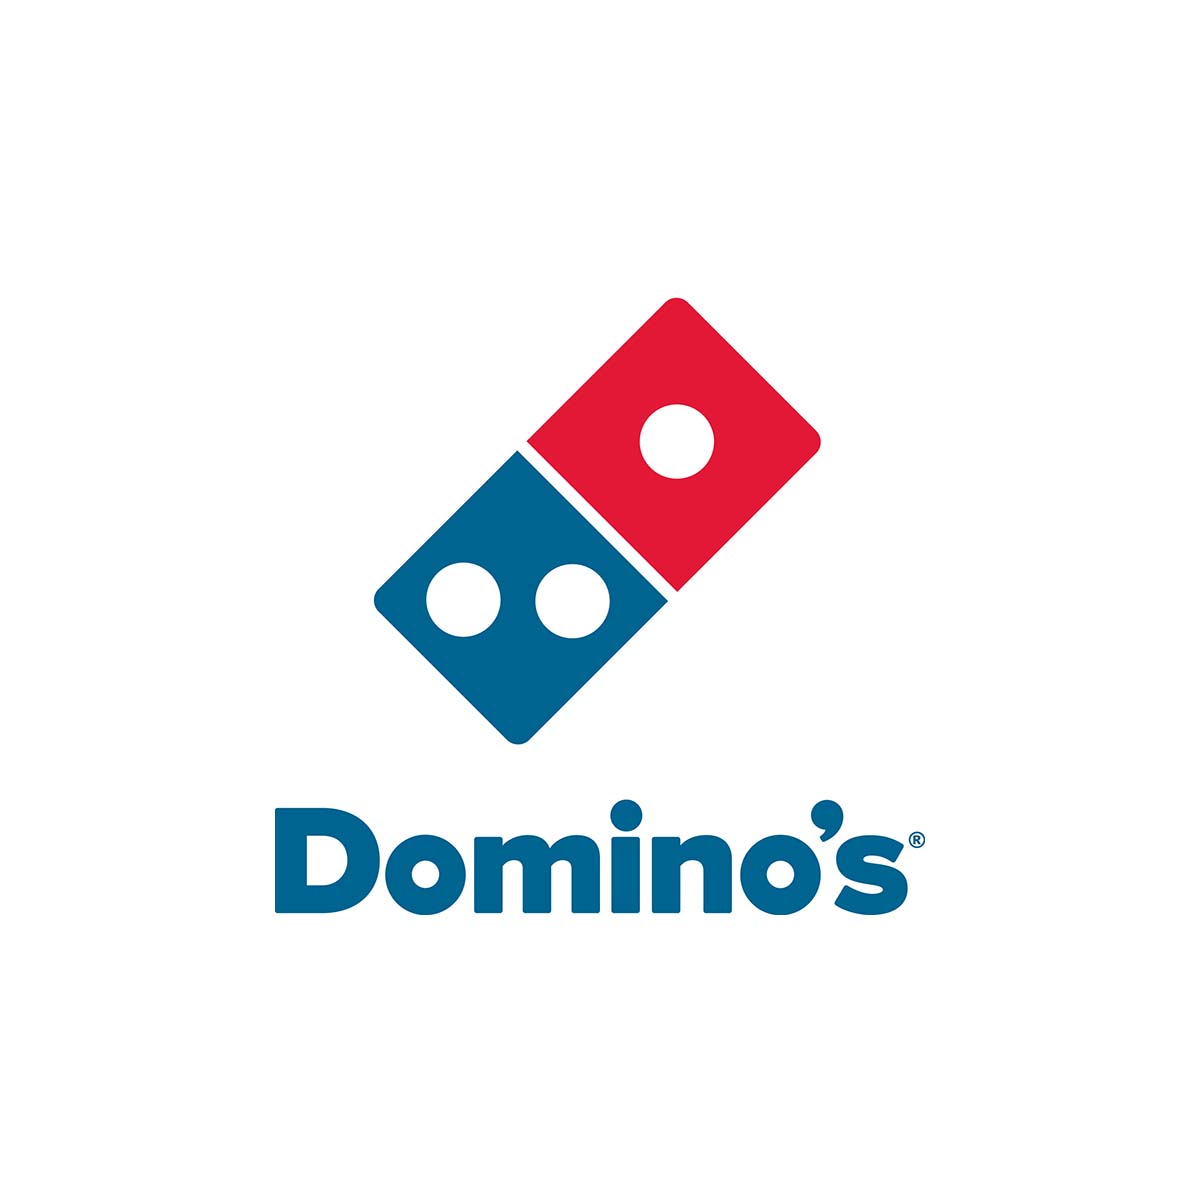 Domino S Pizza Austria Pizza Online Bestellen